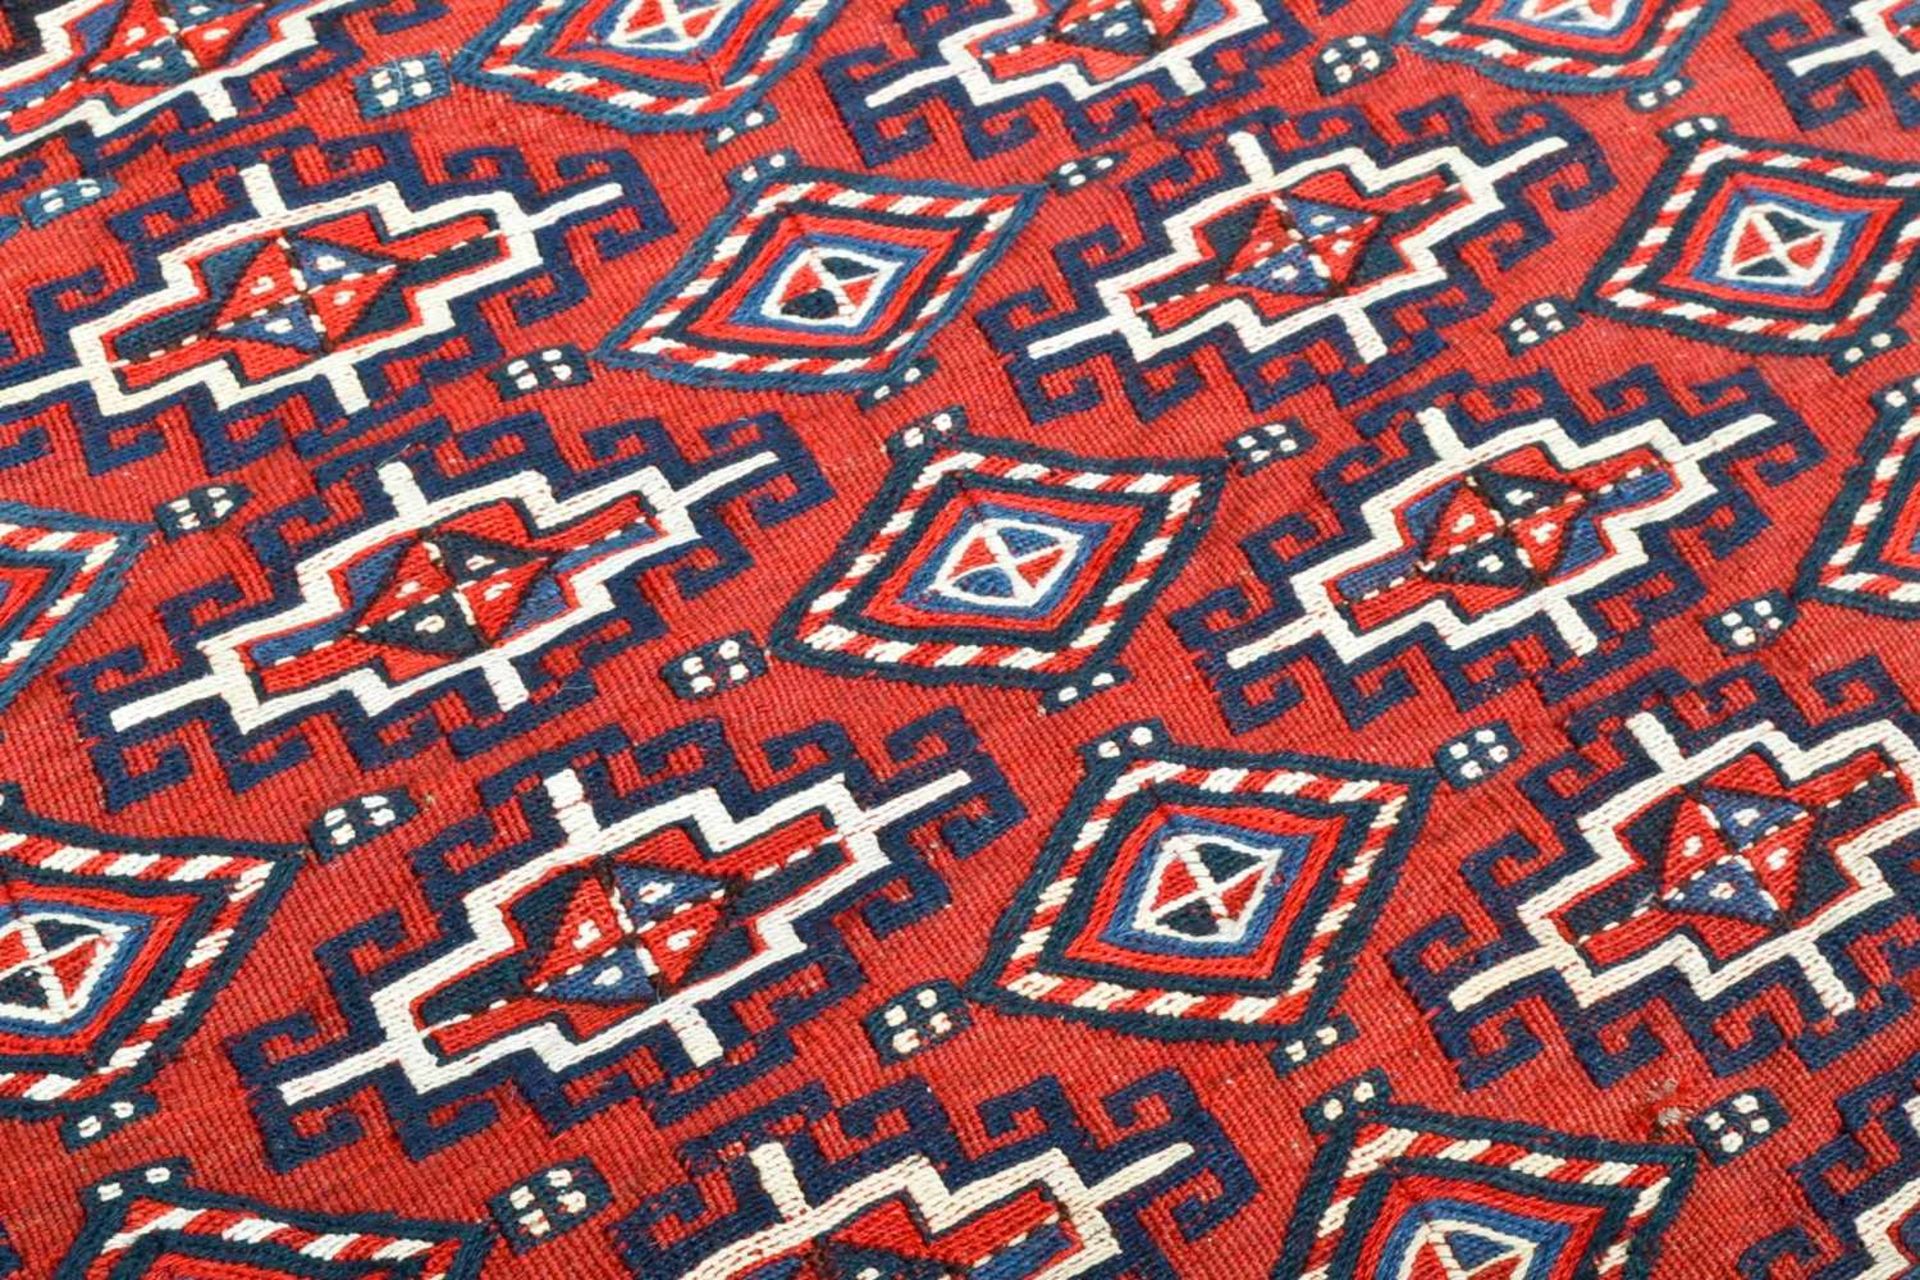 3teiliges Konvolut "alte und antike" Teppiche, bestehend aus drei versch. Kelim bzw. Flachgewebe- - Bild 4 aus 14